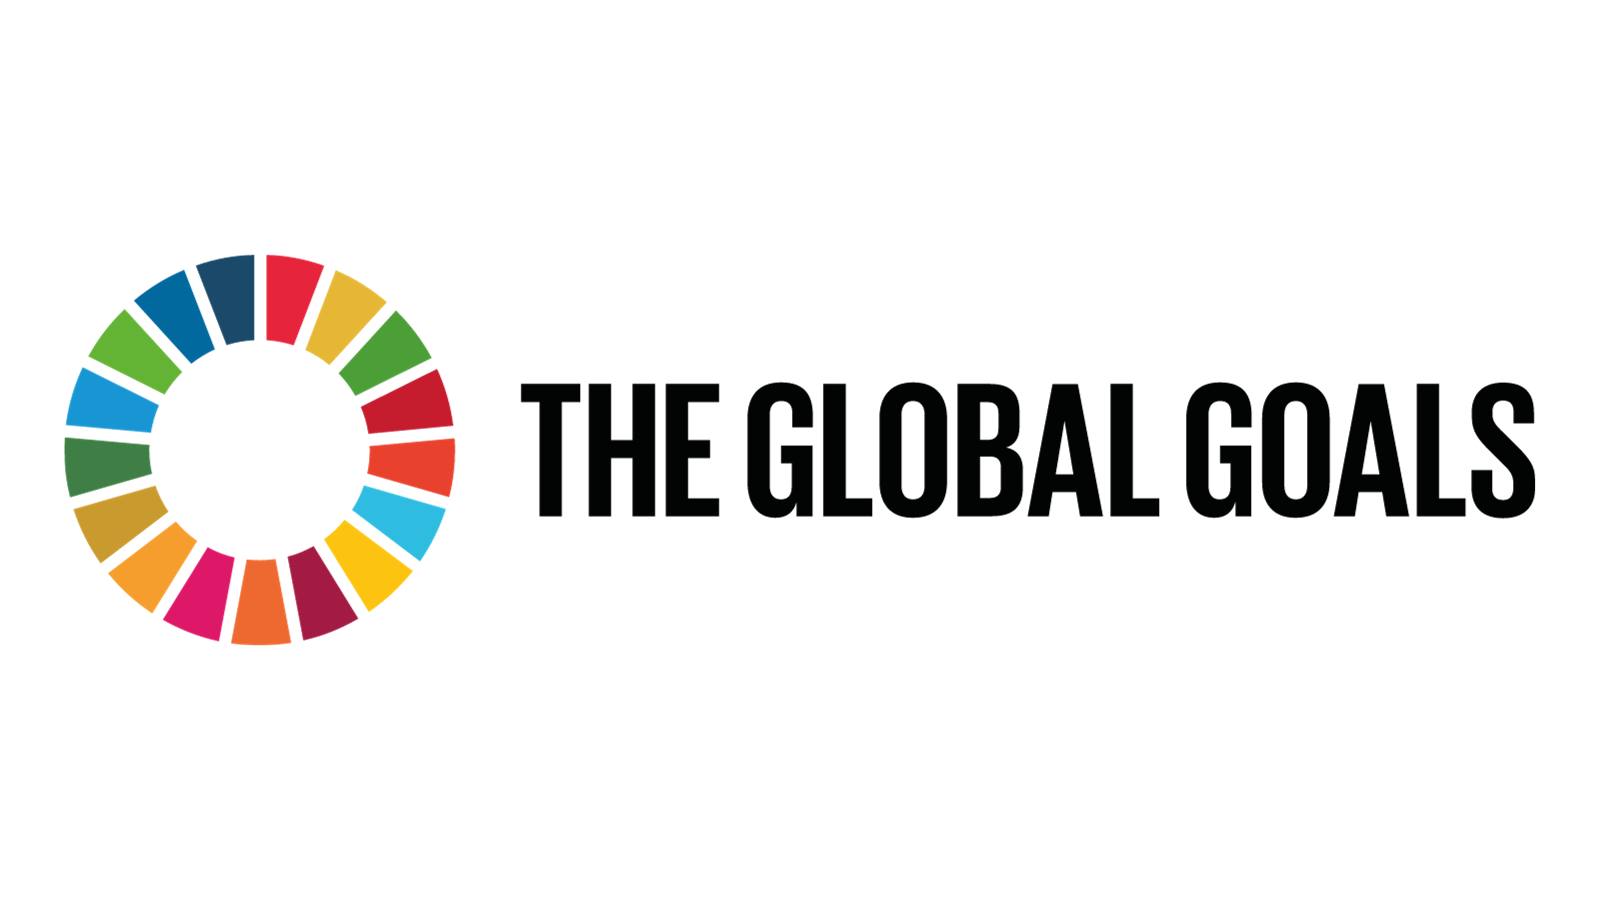 l'immagine rappresentativa degli obiettivi di sviluppo sostenibile e la scritto THE GLOBAL GOALS